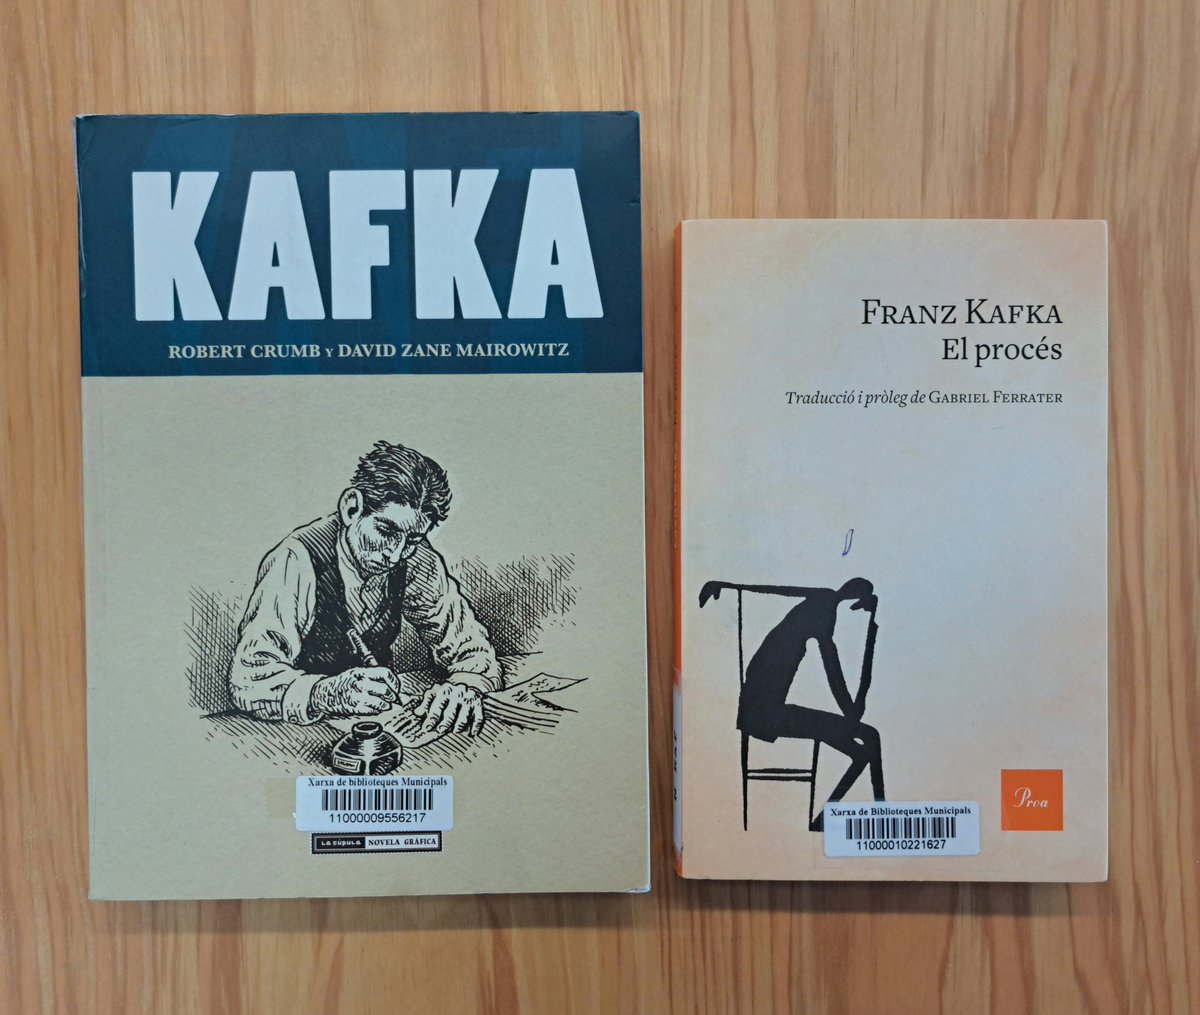 Aquest any 2024 es commemora el centenari de la mort de l’escriptor txec #FranzKafka.

I el Club de còmic i la Tertúlia literària de la #BibliotecaelMolí ho celebren aquest mes.

ℹ️ Més informació #PVnovela: bit.ly/kafka_bv

#Kafka100 #bibliotequesXBM